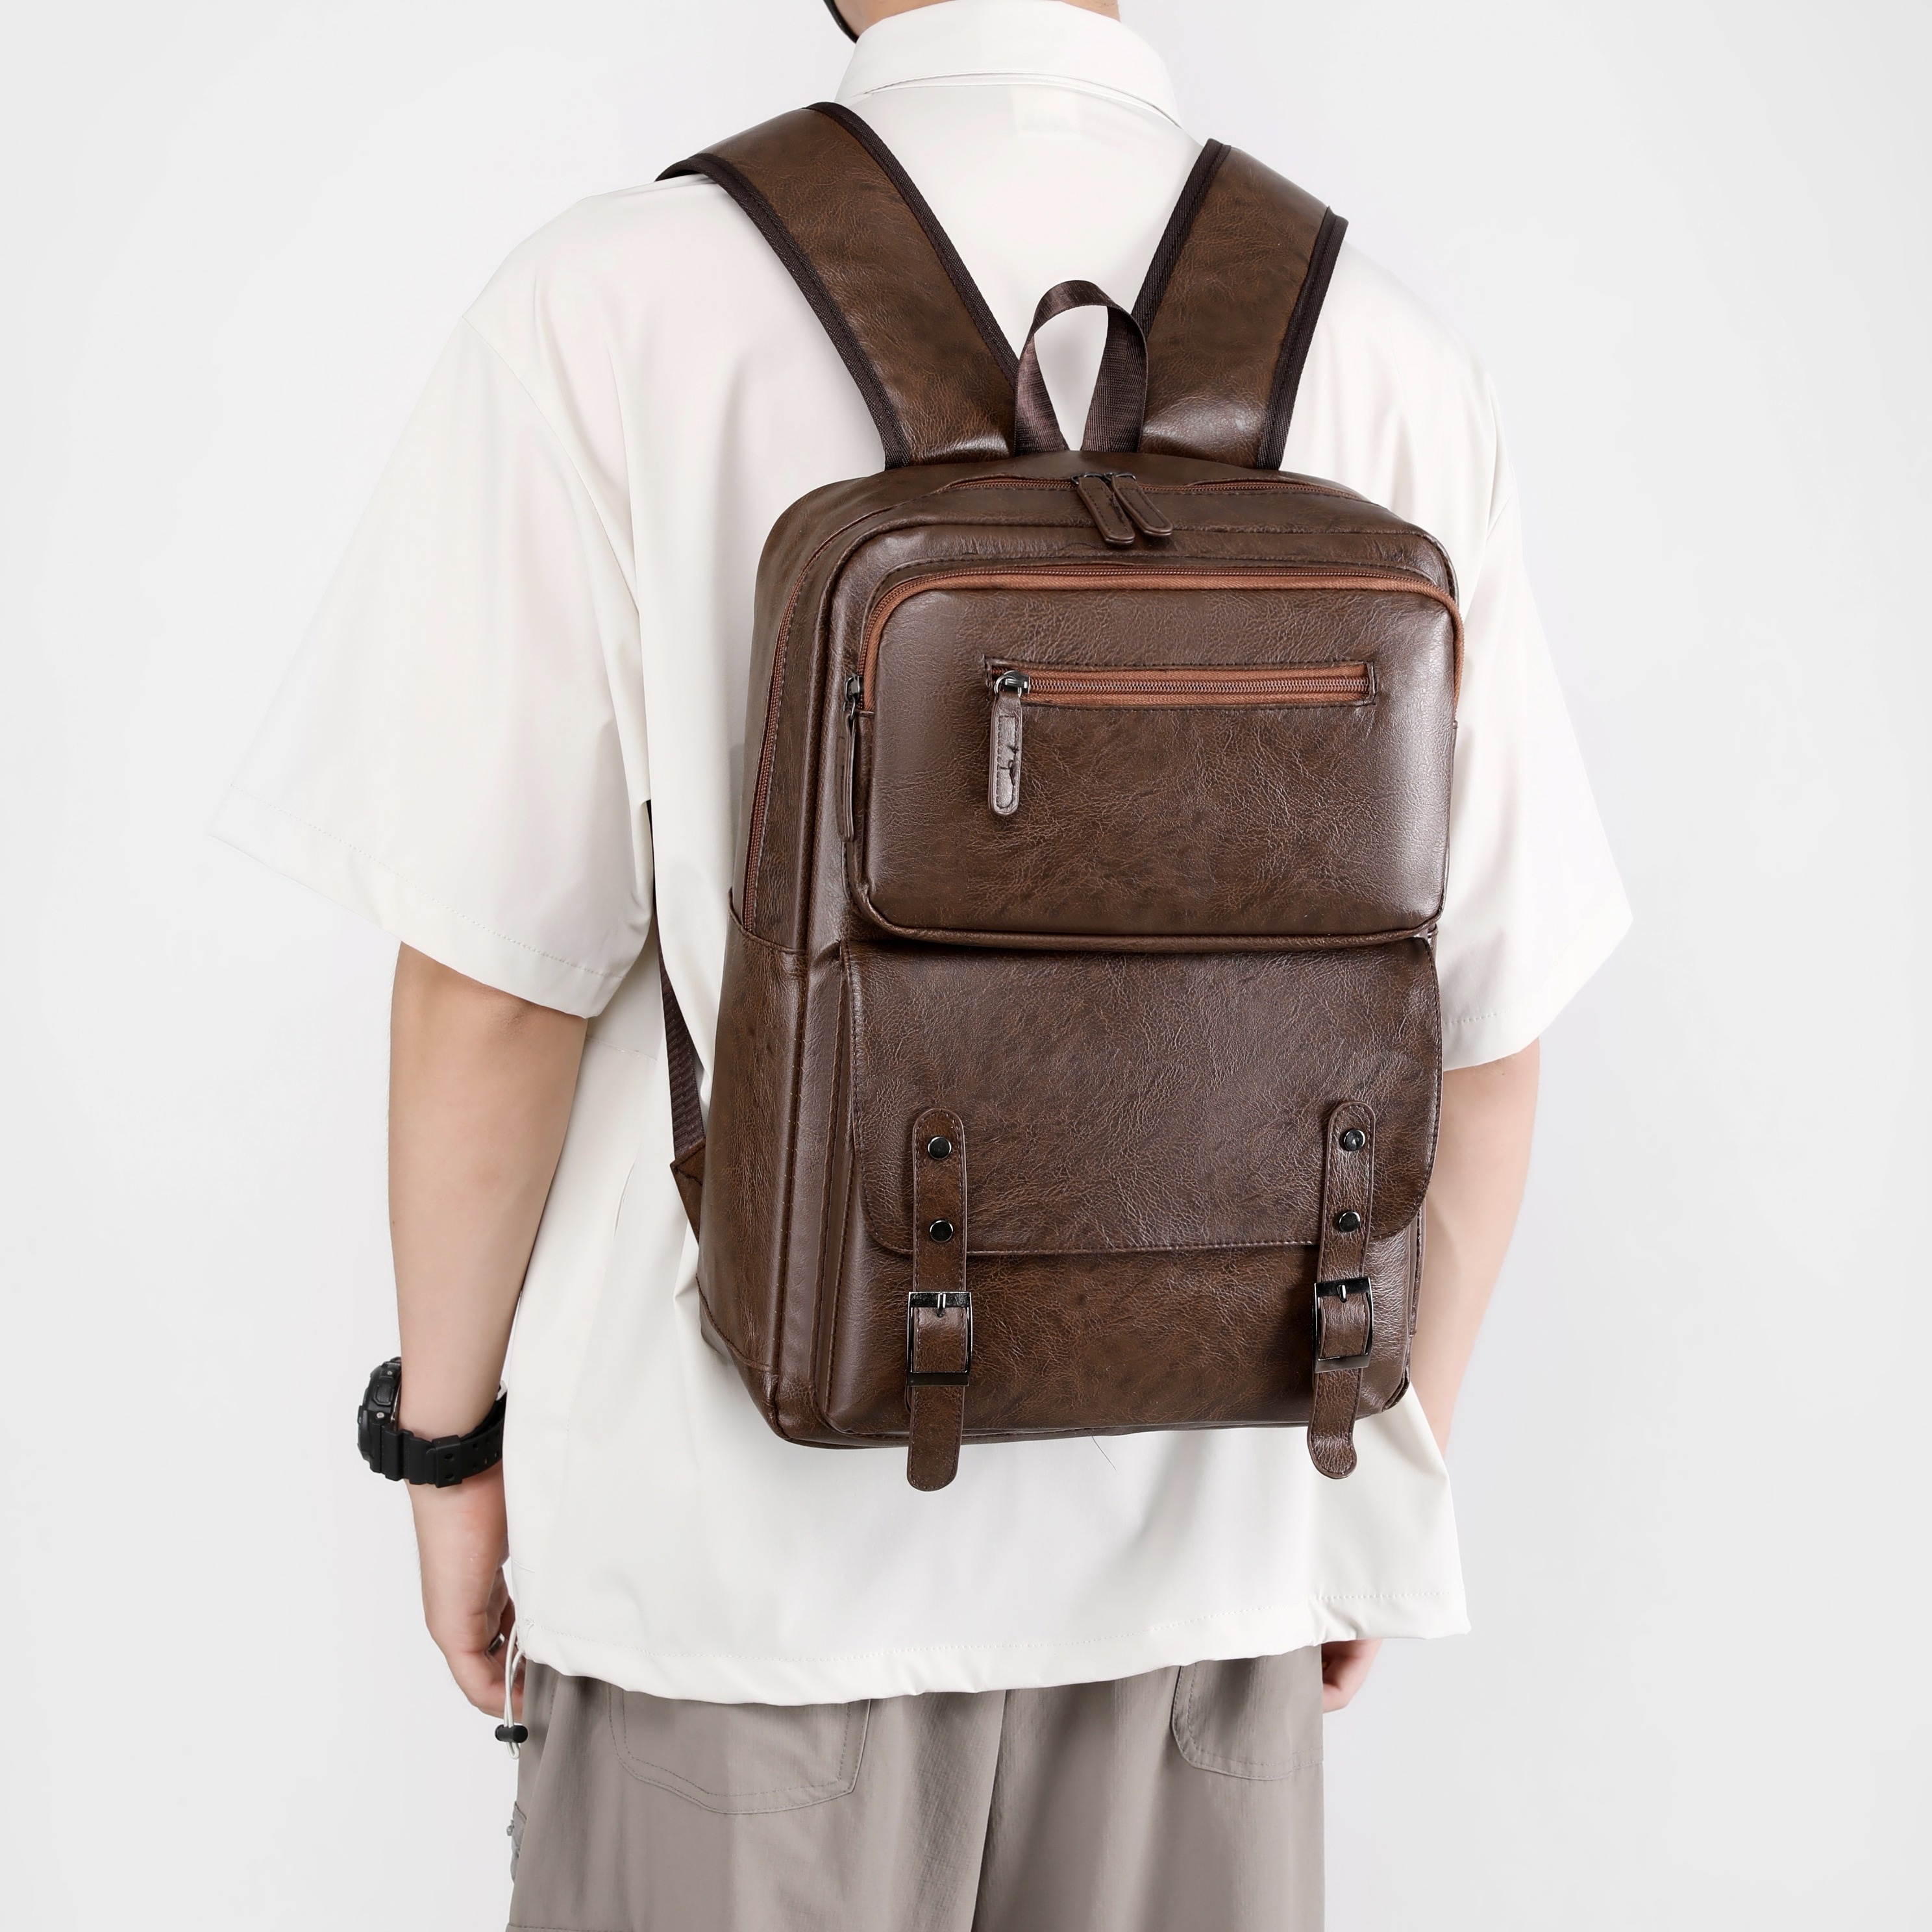 Blu Flut Men's Backpack, Vintage Simple Leather Large Capacity